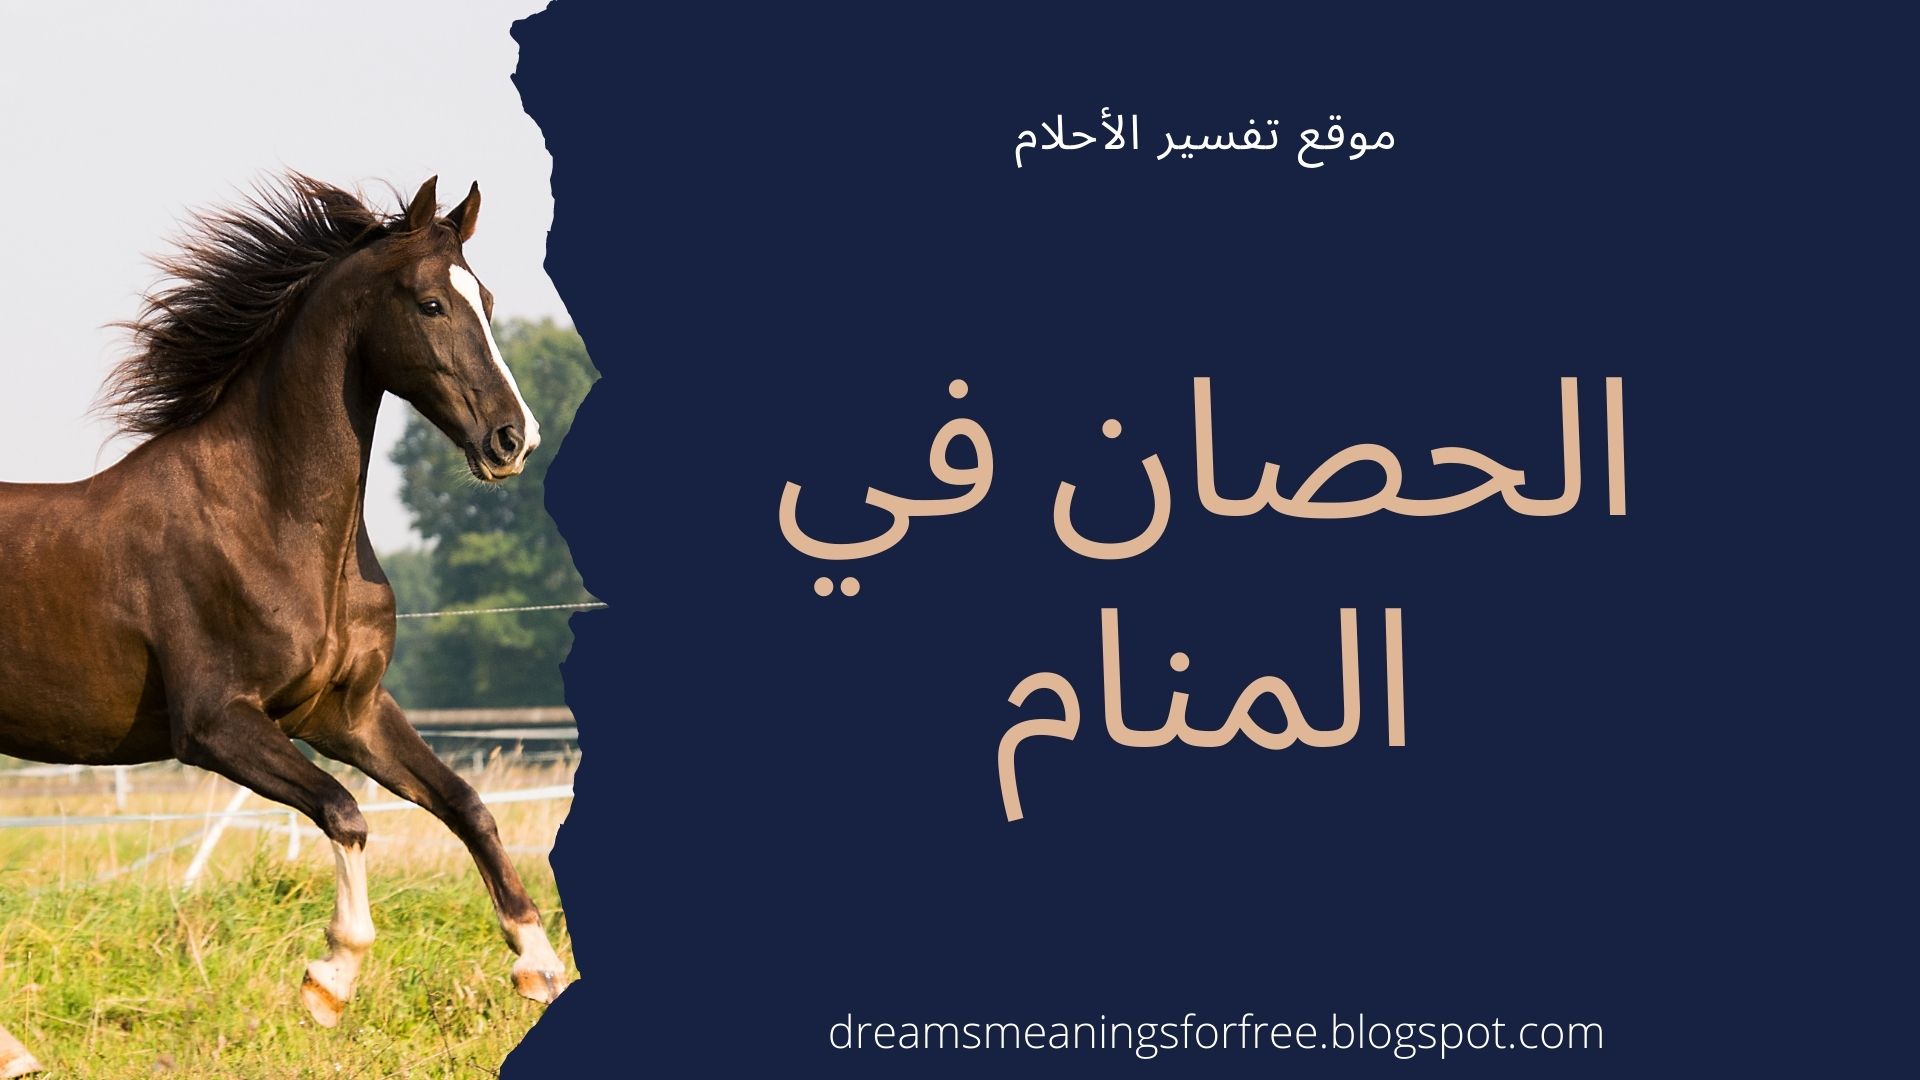 الحصان في المنام تفسير حلم الحصان للرجل و المرأة المتزوجة و الحامل و العزباء